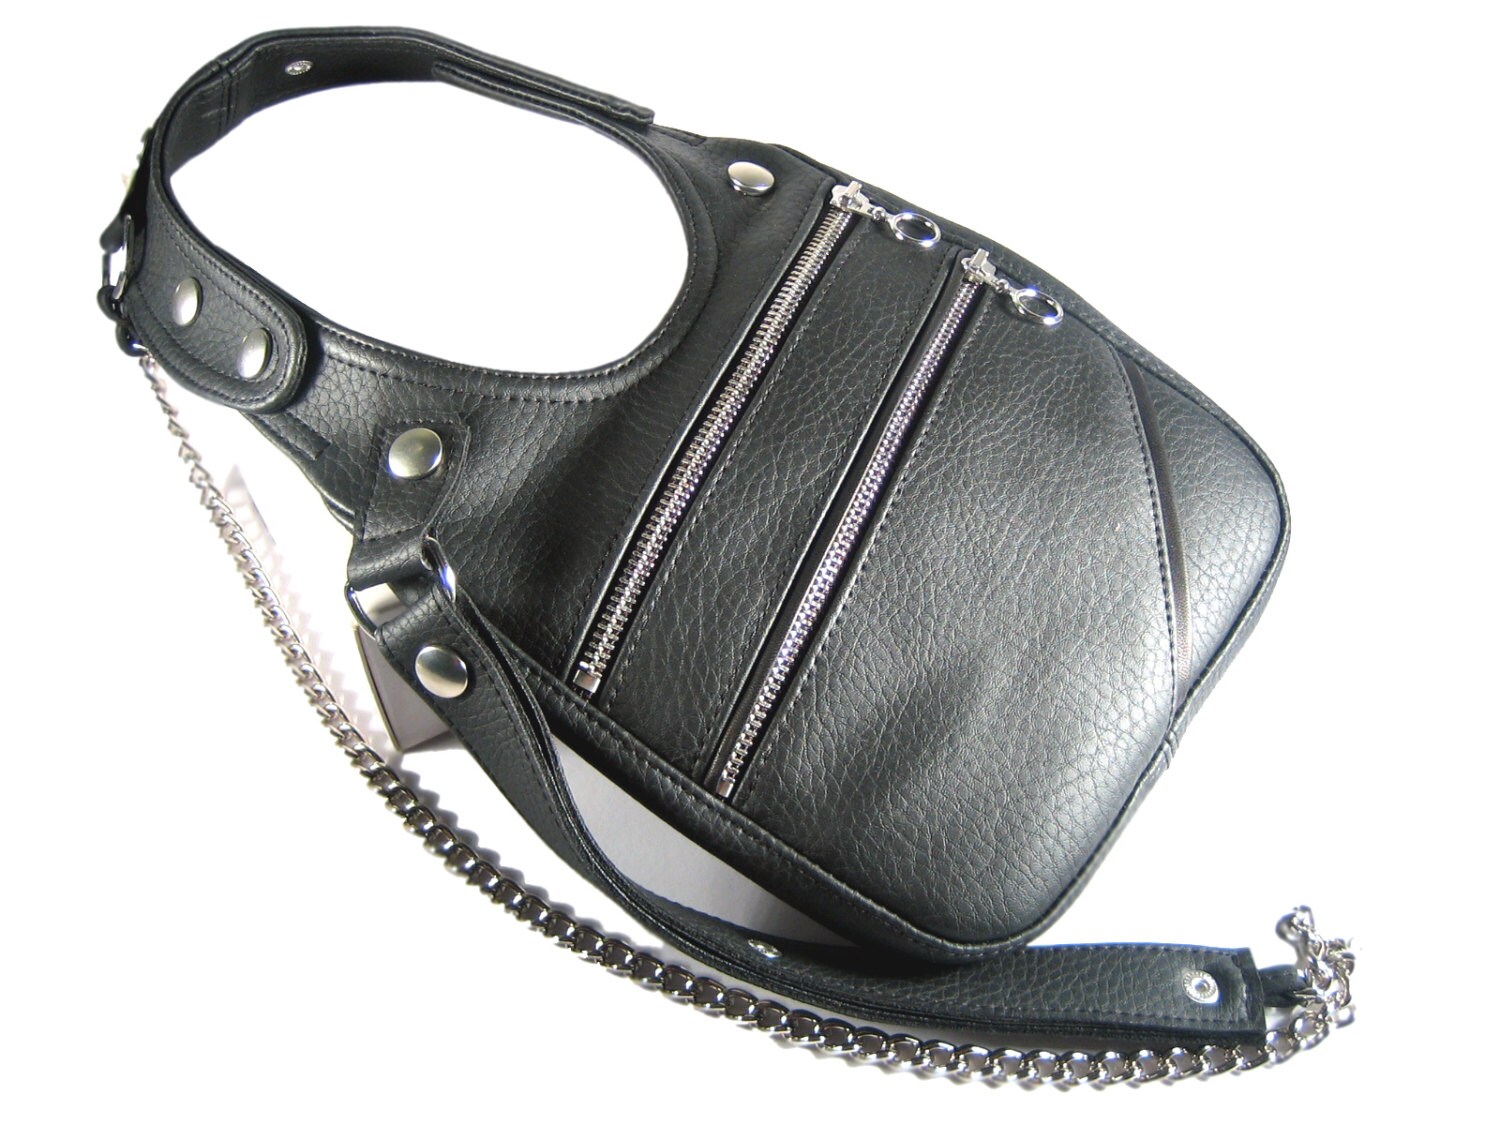 Revolver bag shoulder holster bag black vegan bag festival bag | Etsy